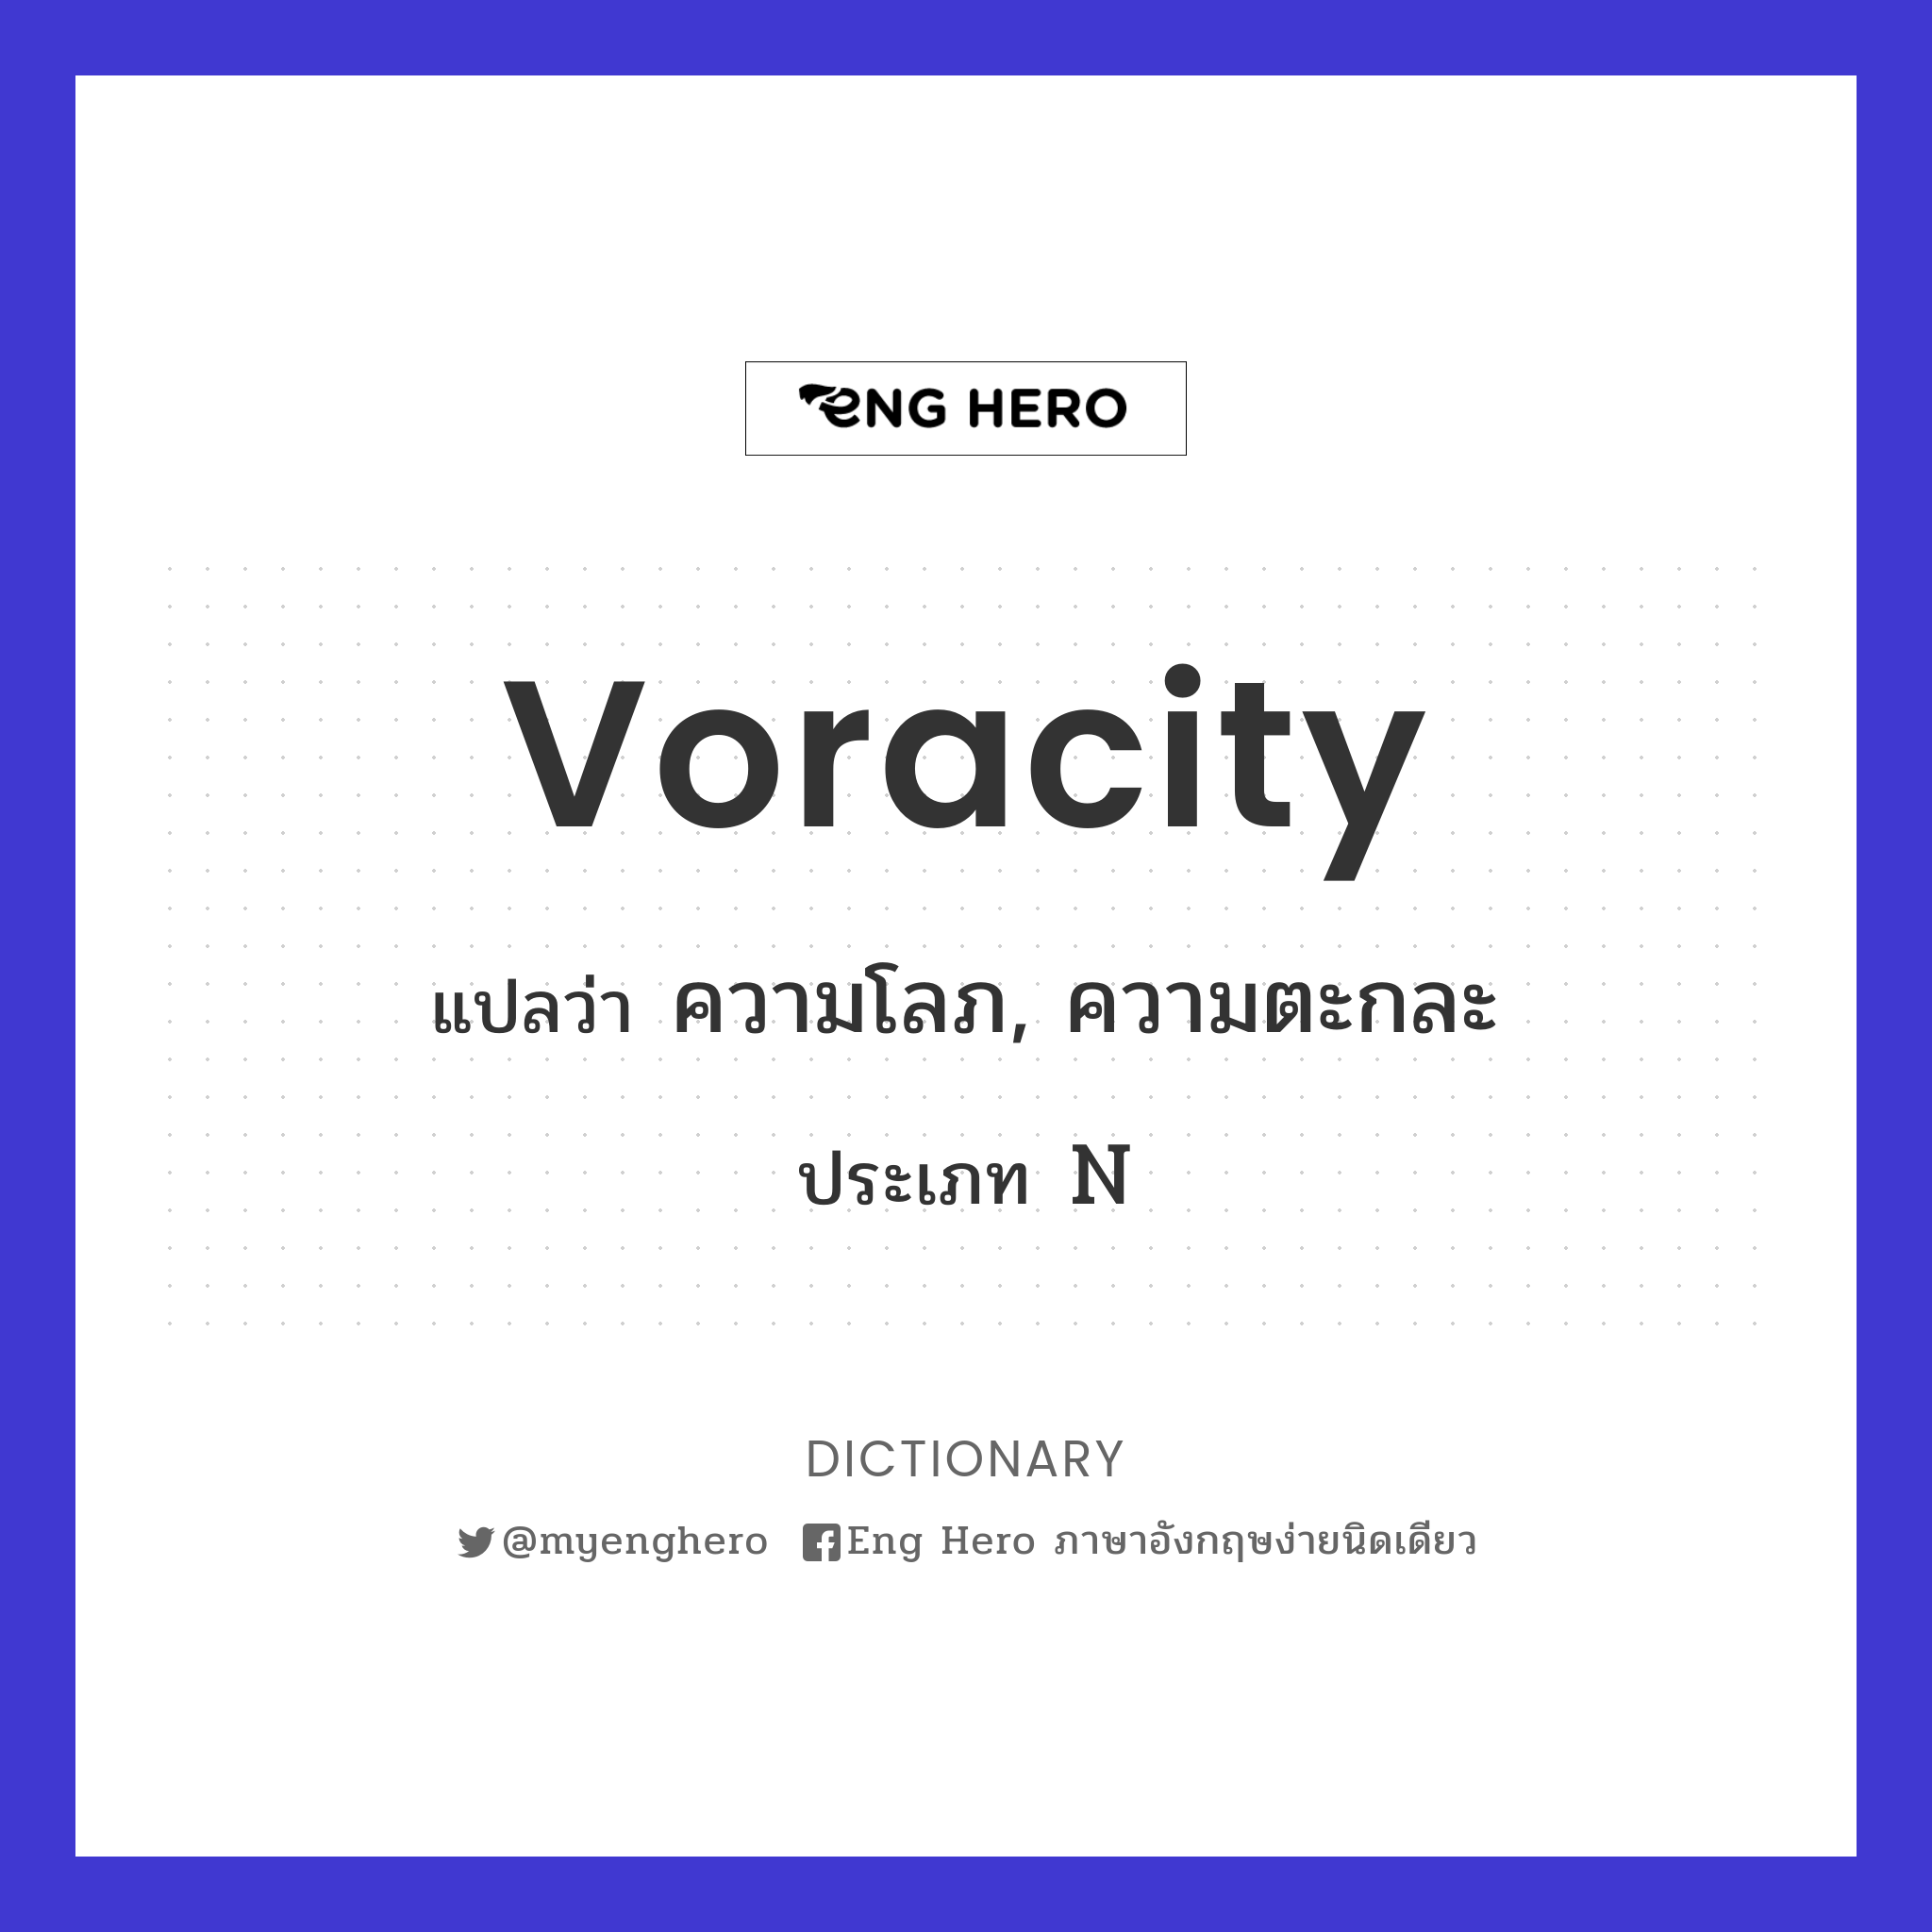 voracity